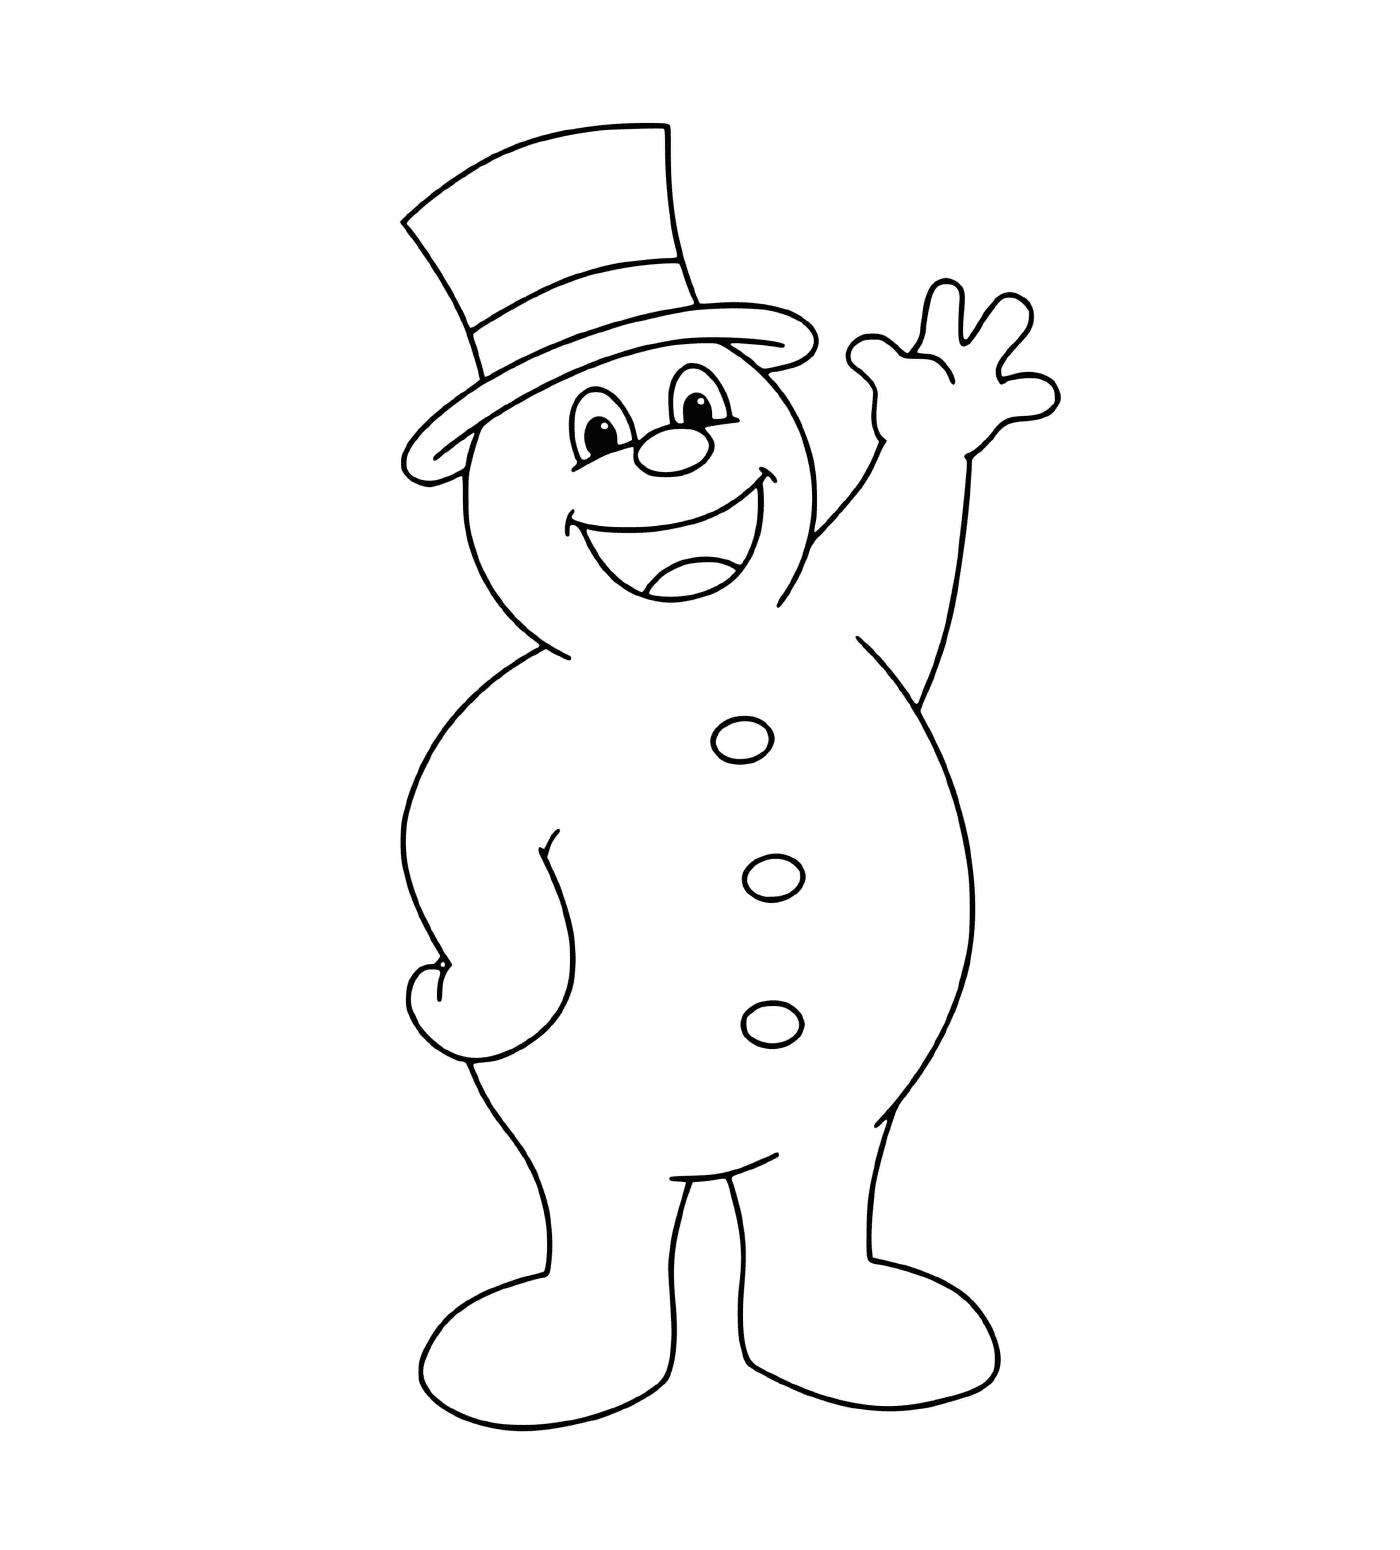  Frosty der Schneemann, der grüßt 